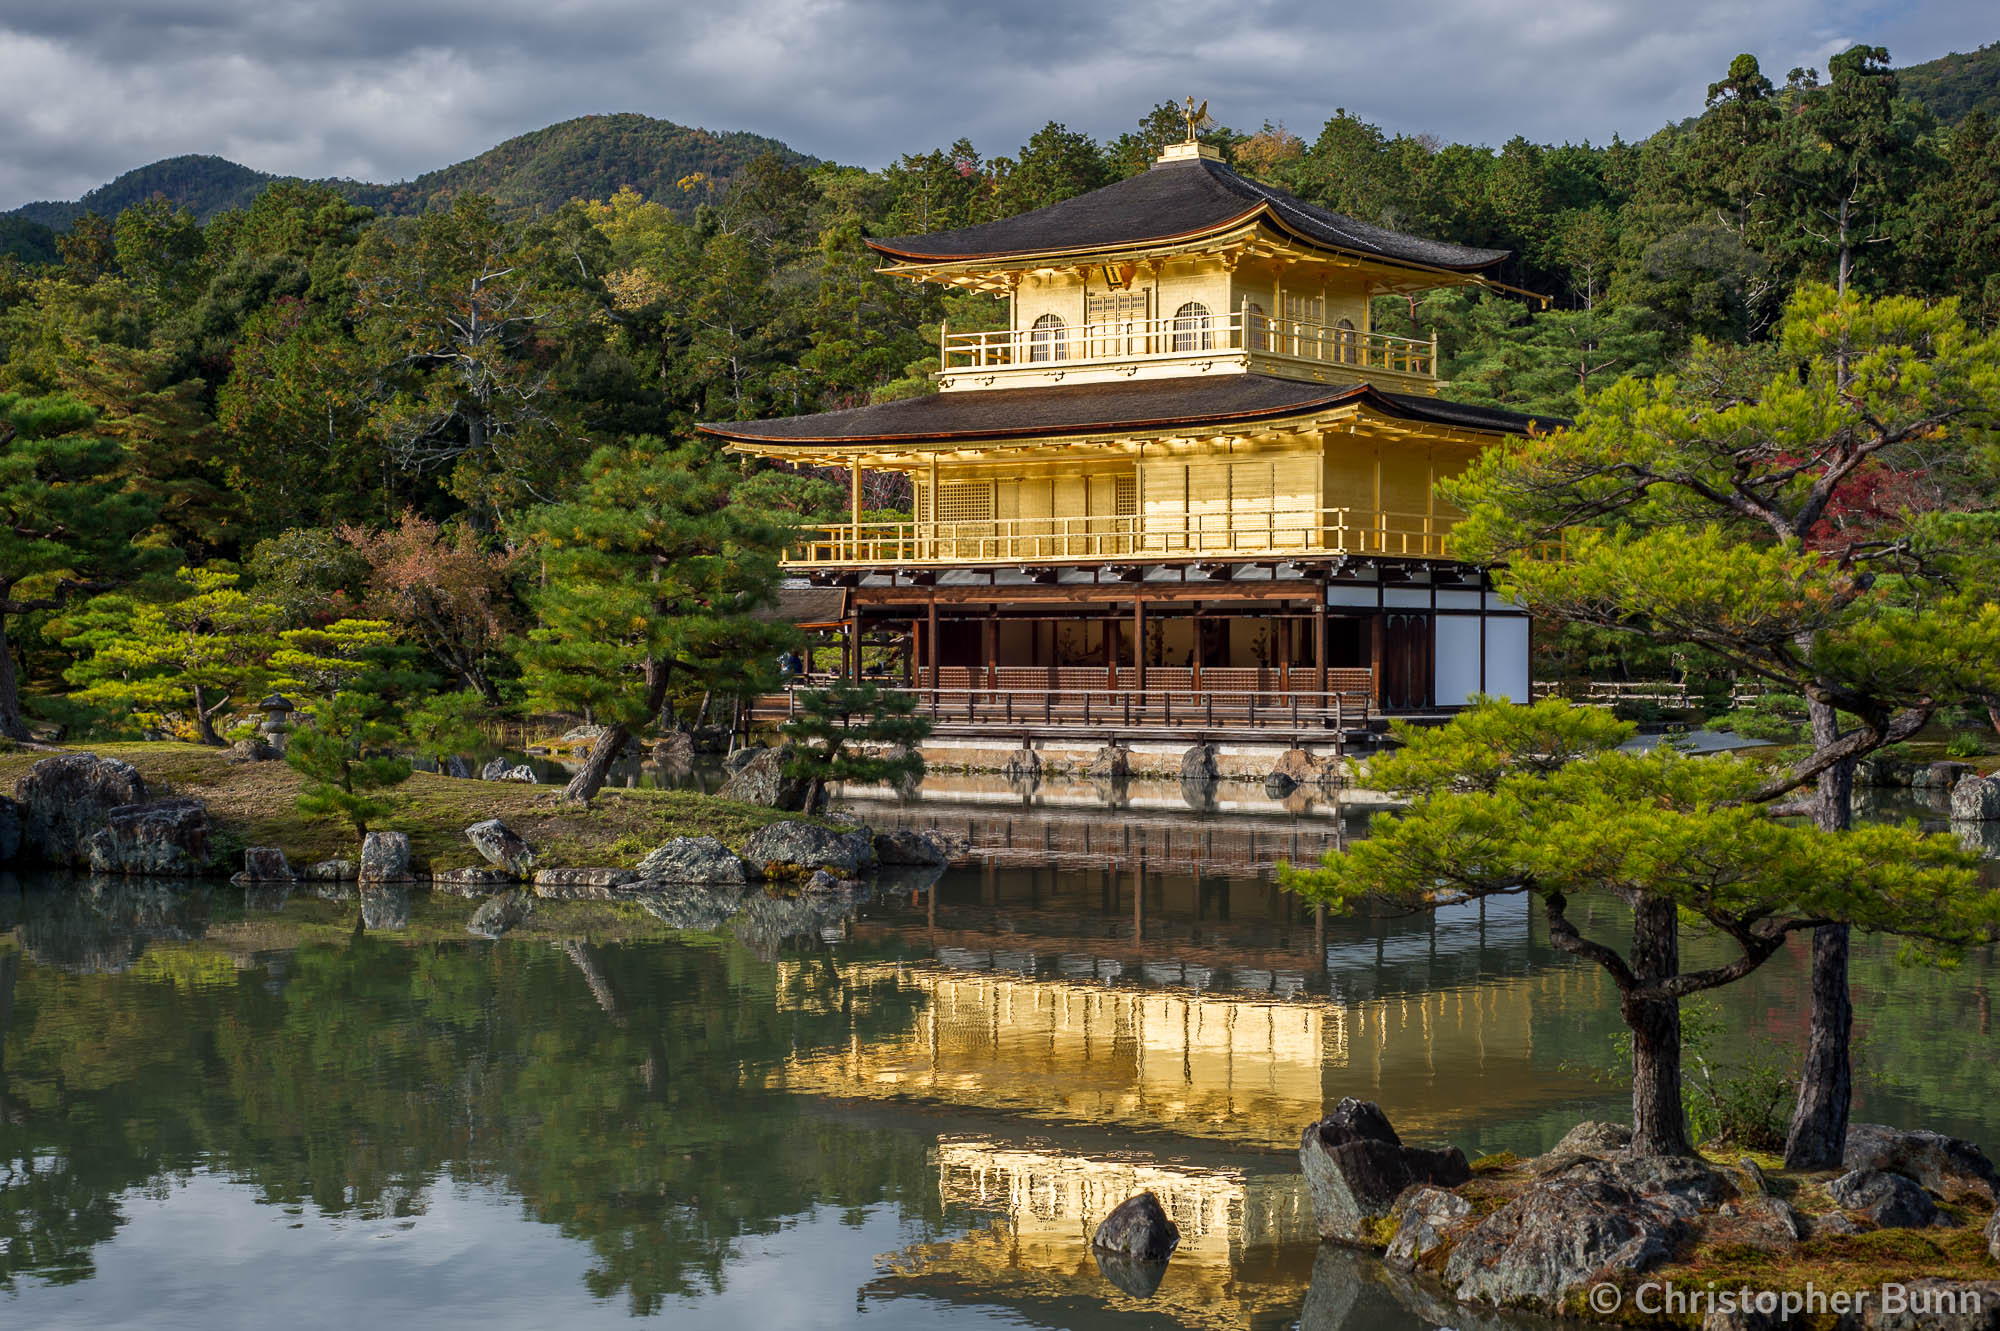 Kinkaku-ji (Temple of the Golden Pavillion) in Kyoto, Japan.